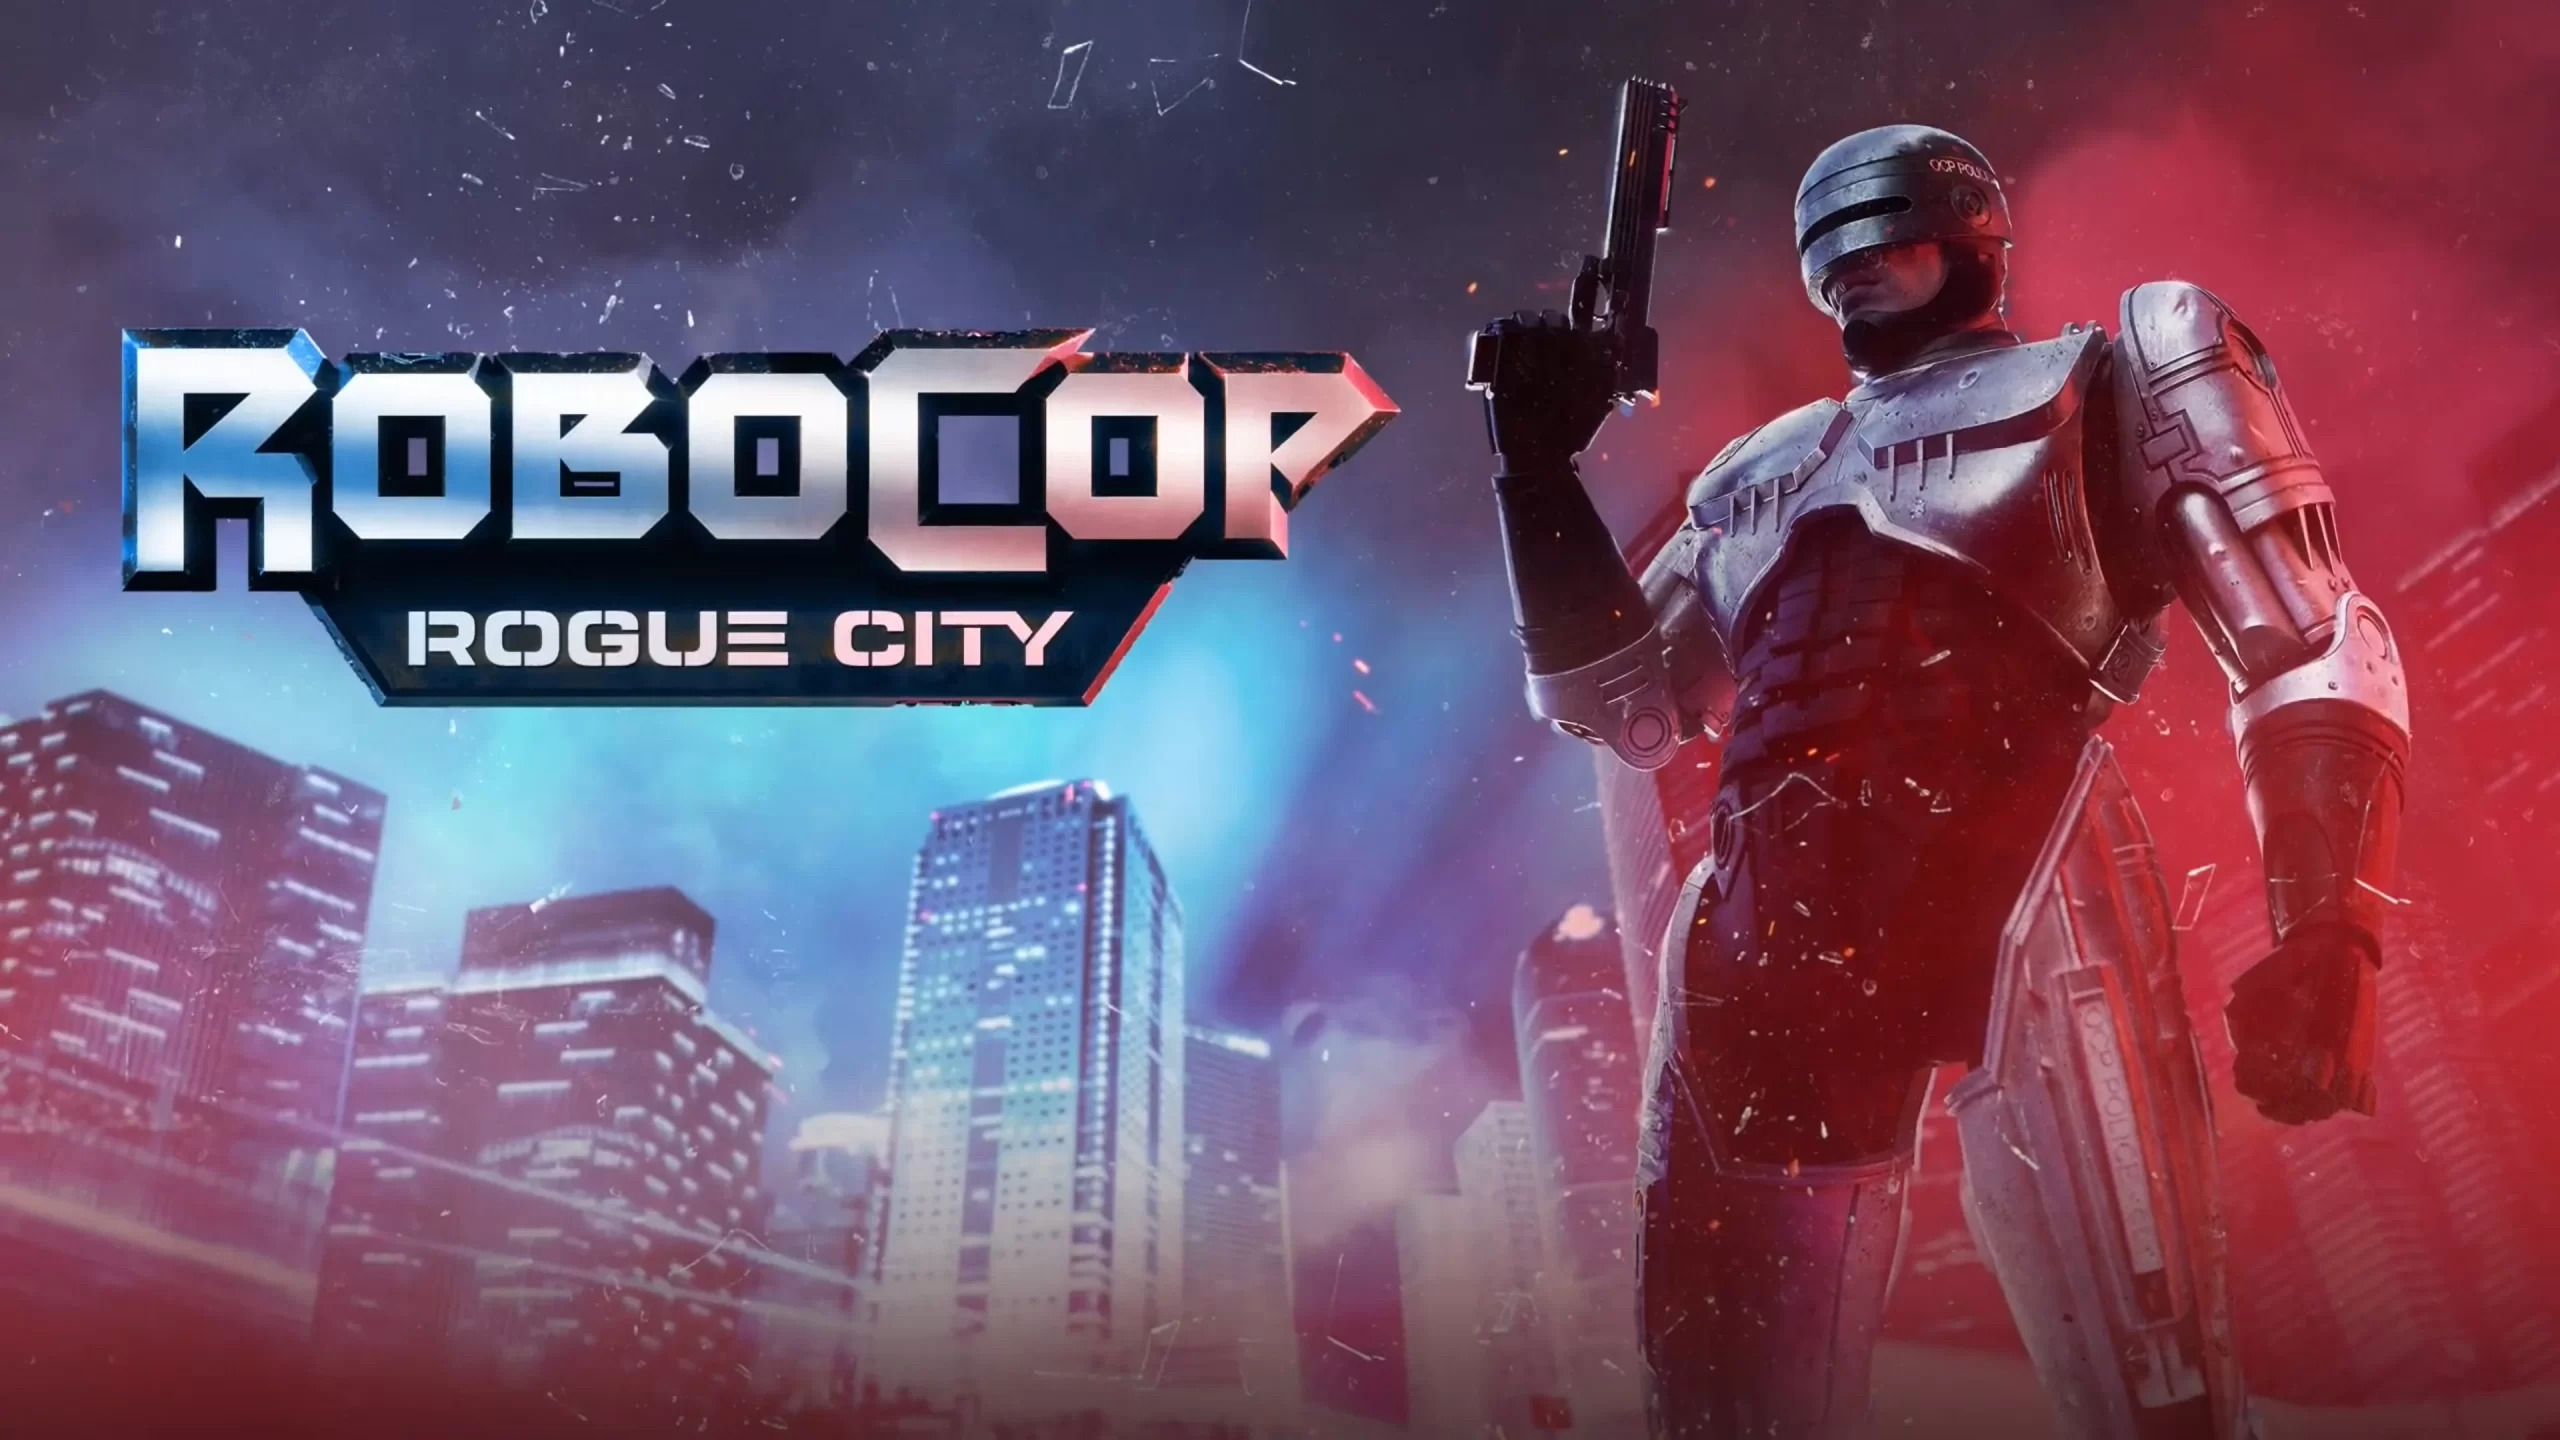 RoboCop - Rogue City#X-Sektor Games 08